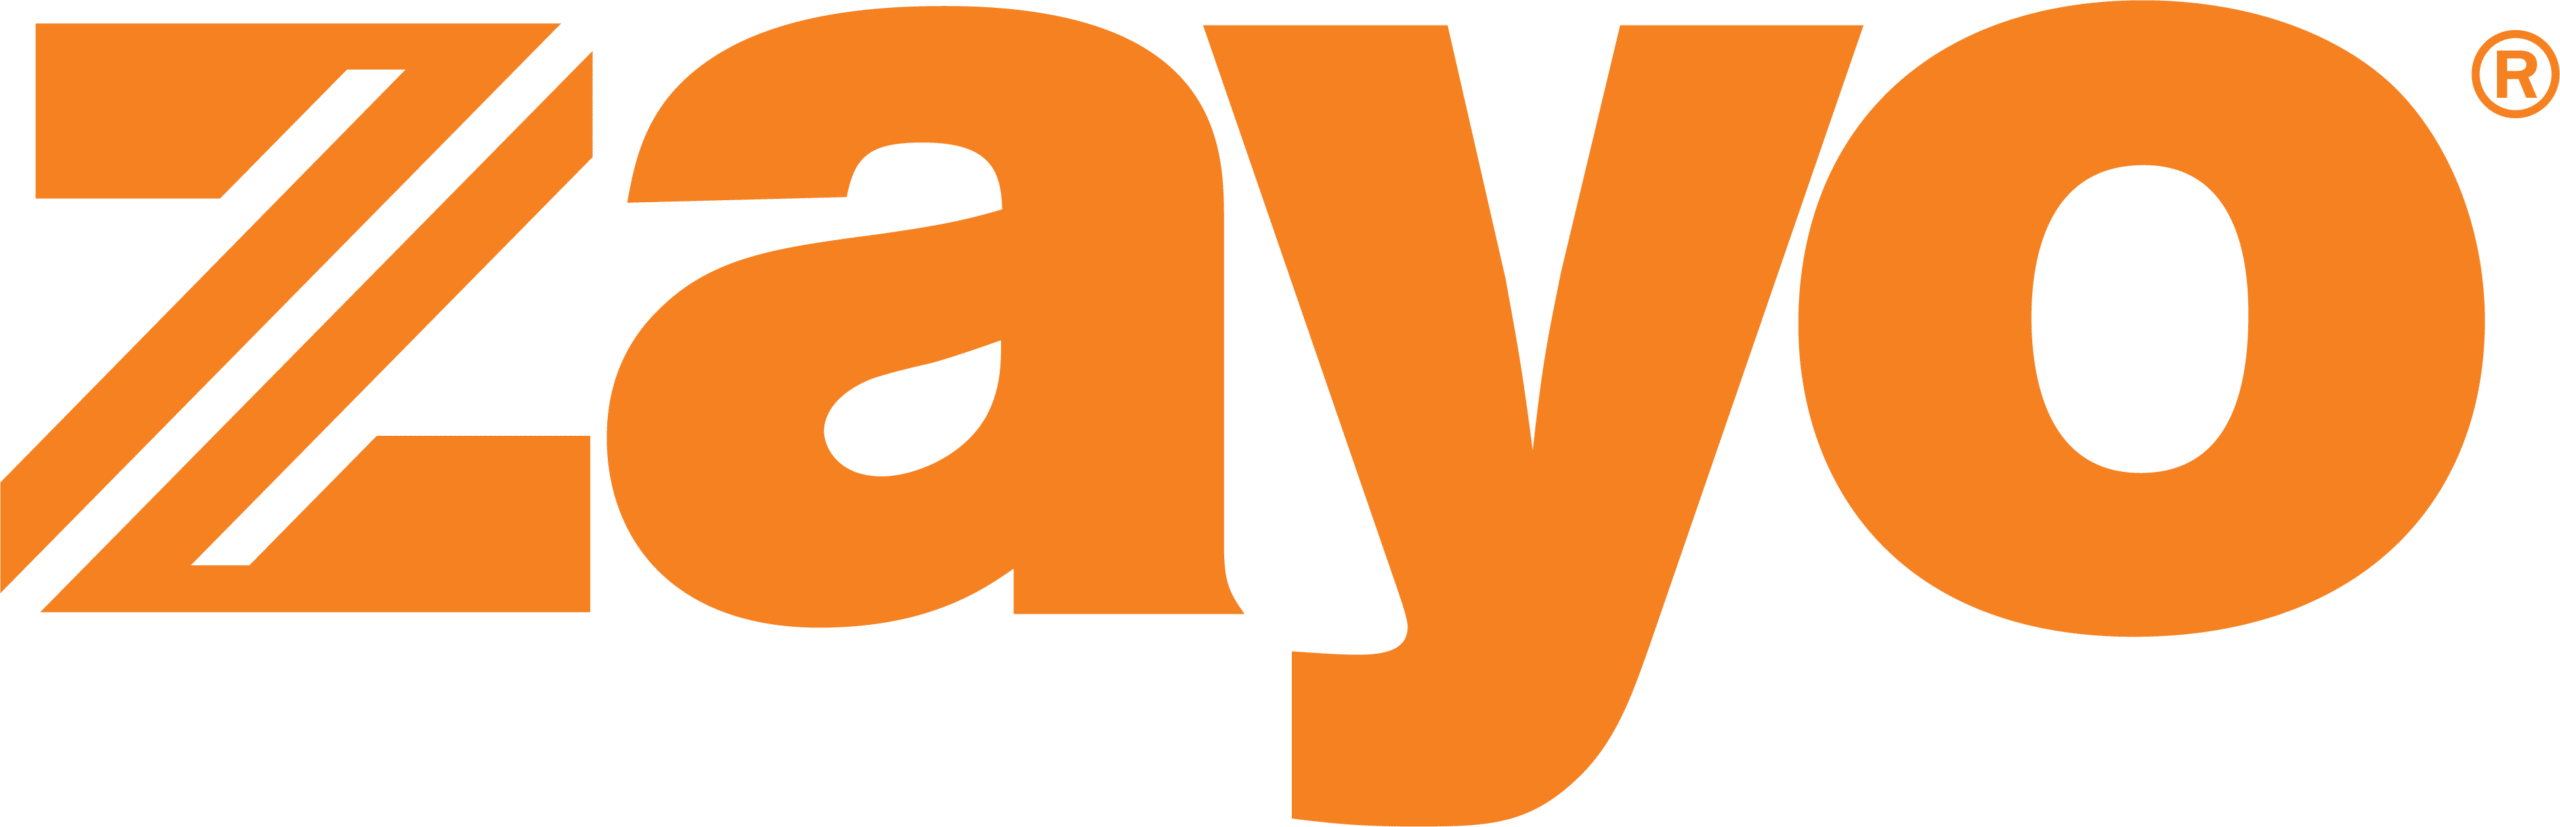 zayo-logo